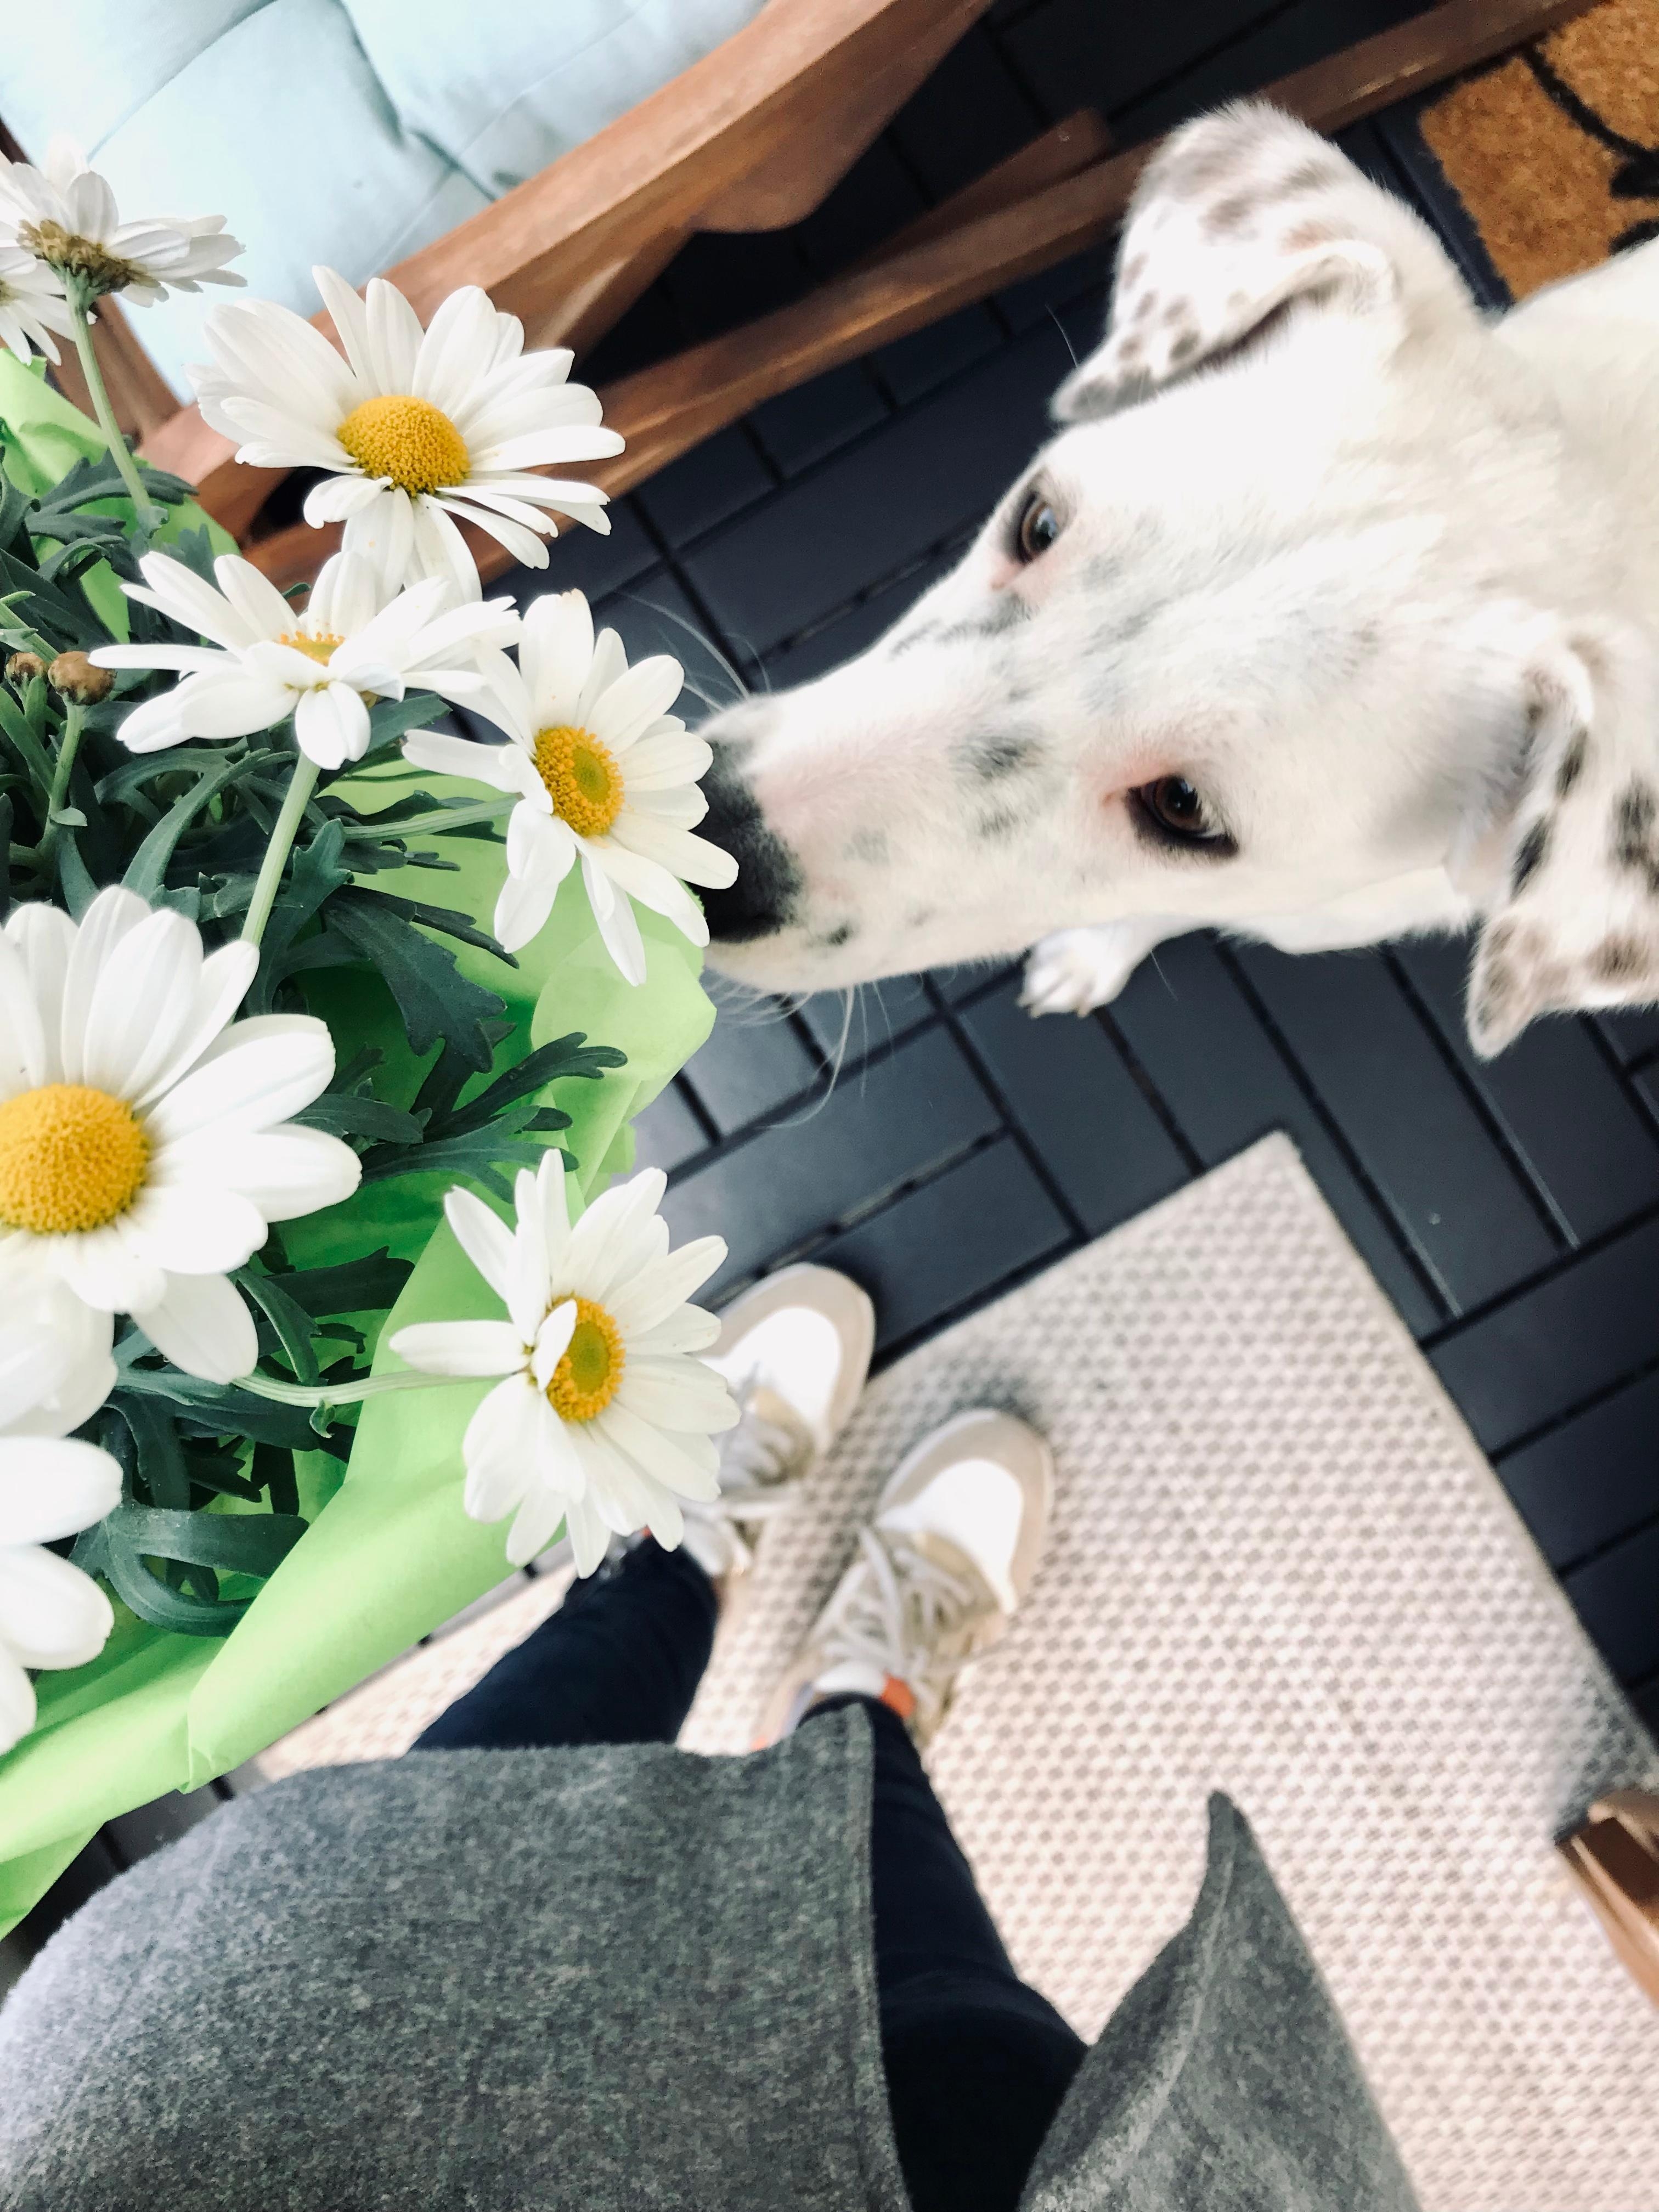 Fresh flower am Mittwoch 💛
#home #balkon #margarithen #dog #kissen #holzstuhl #teppich #happyhome #outdoor #spring
